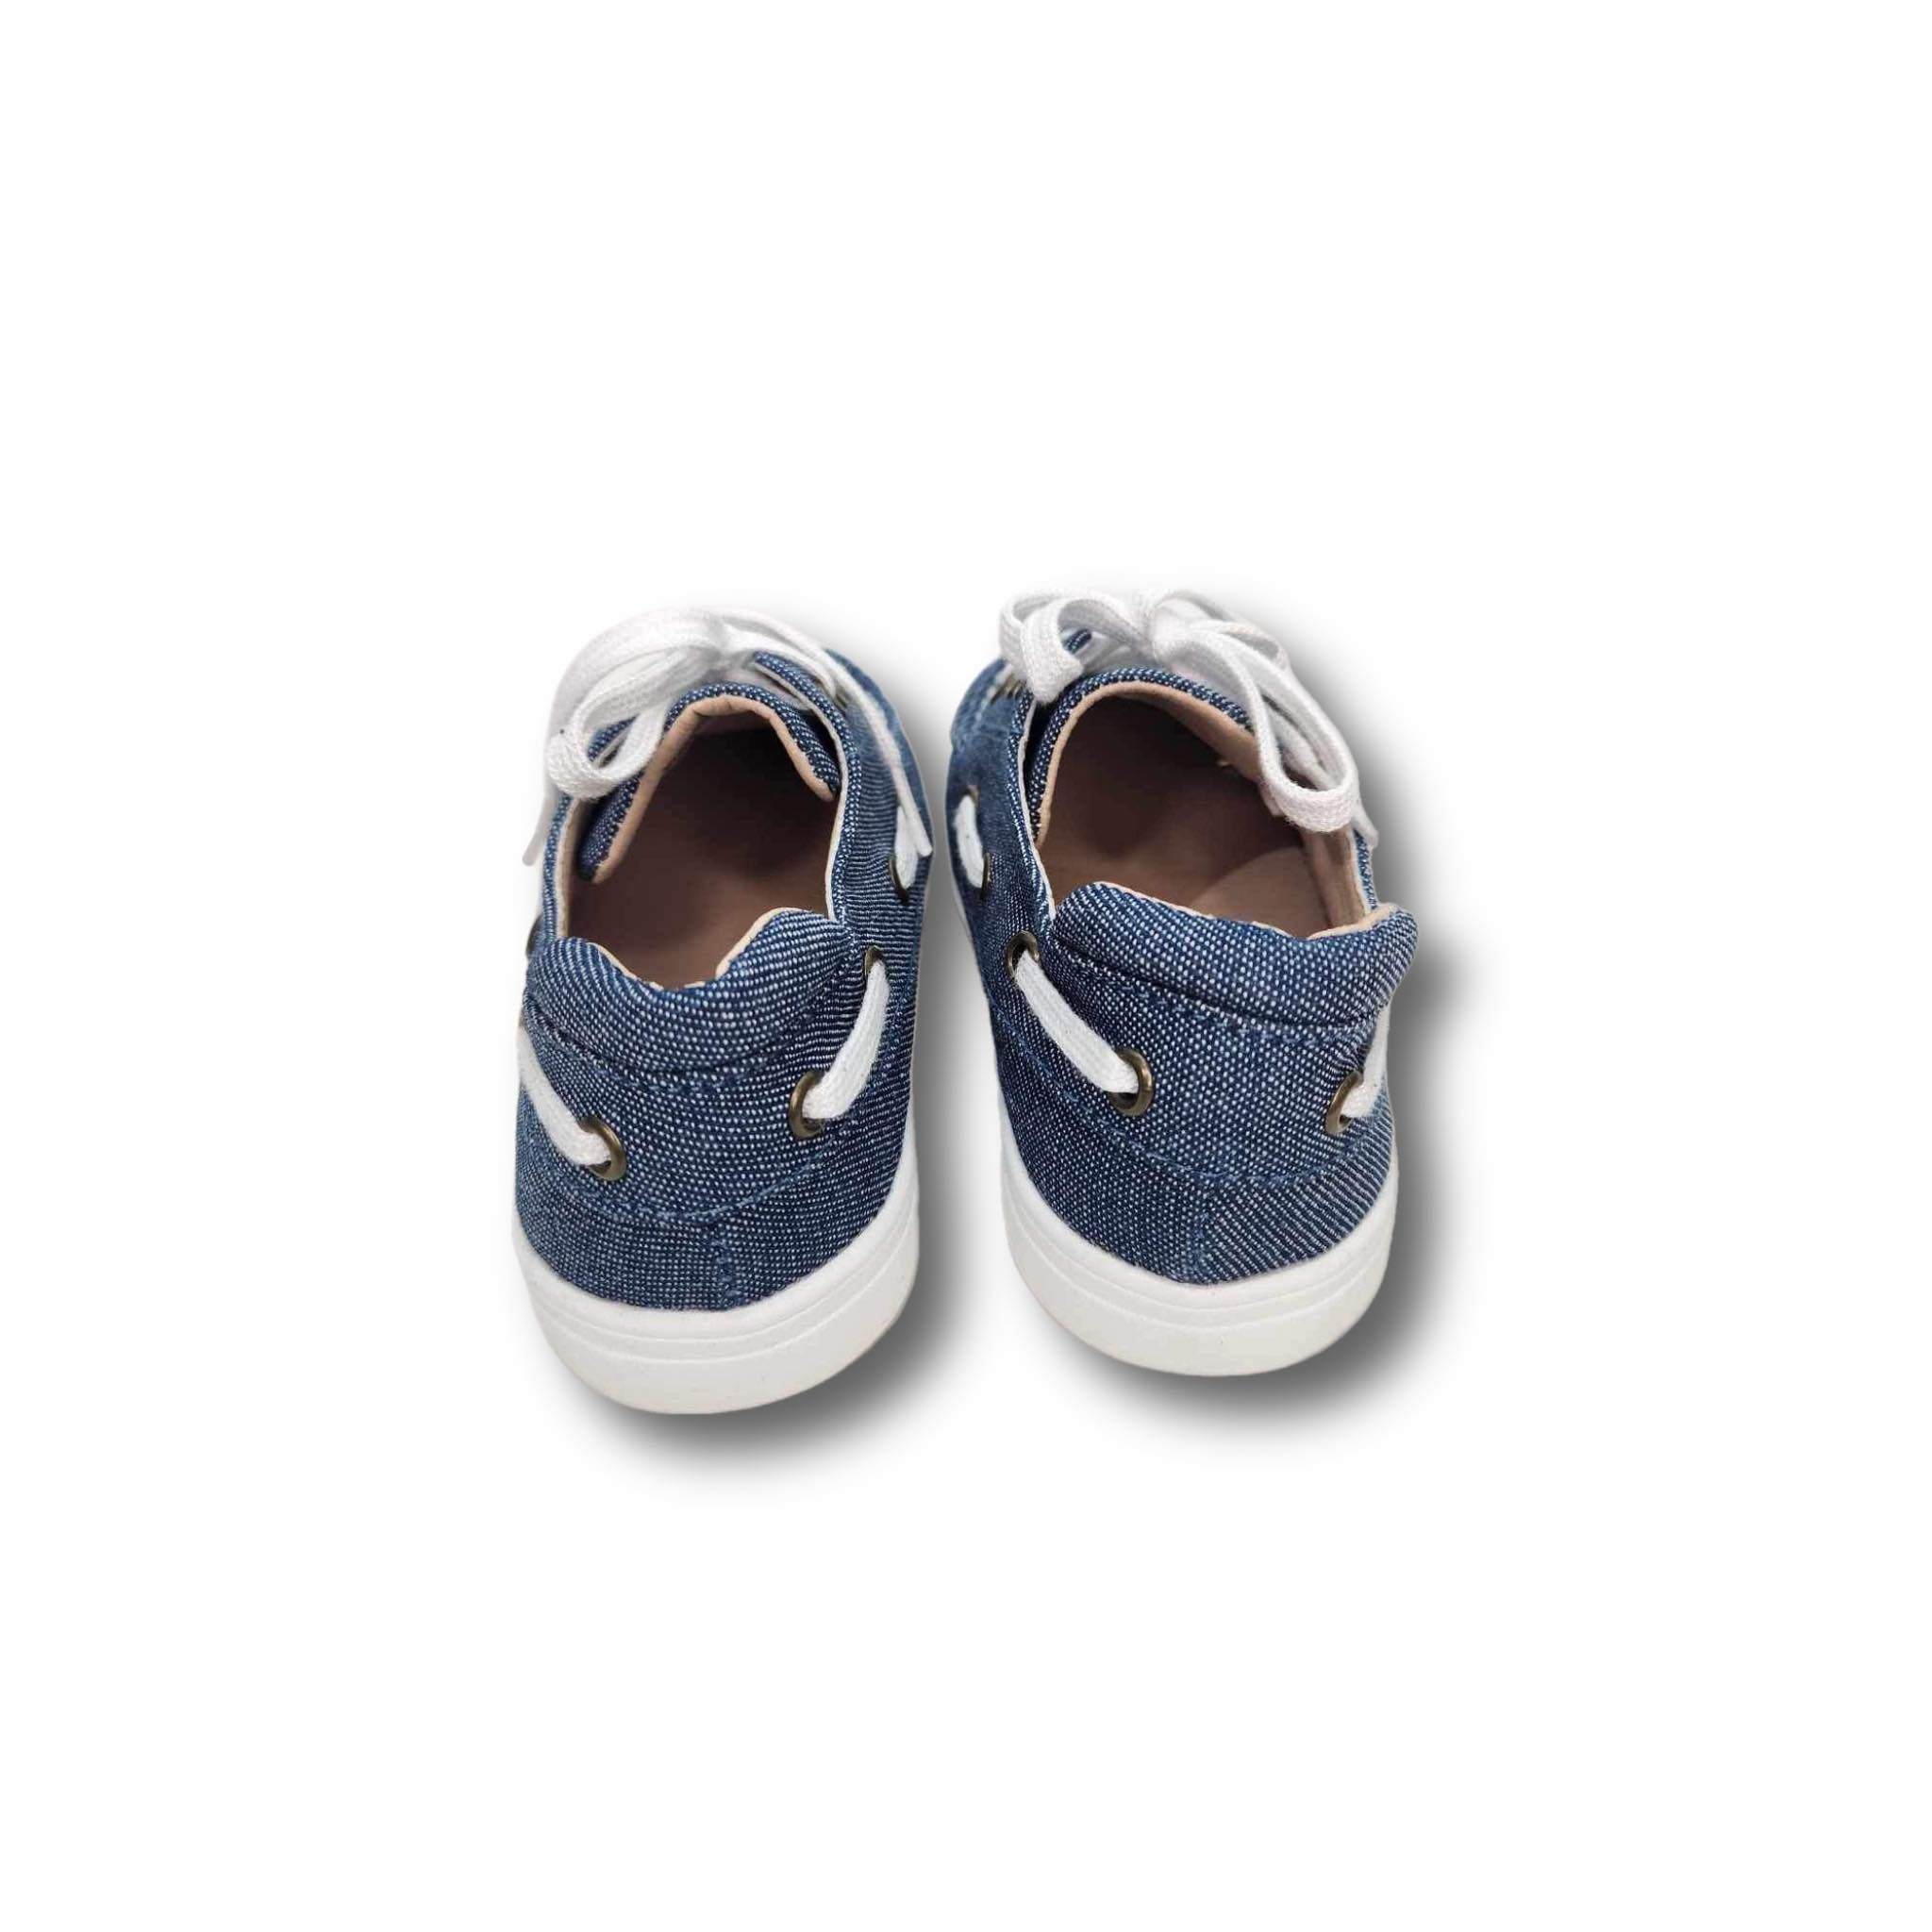 BRYN Children's Boat Shoe Sneaker in Blue